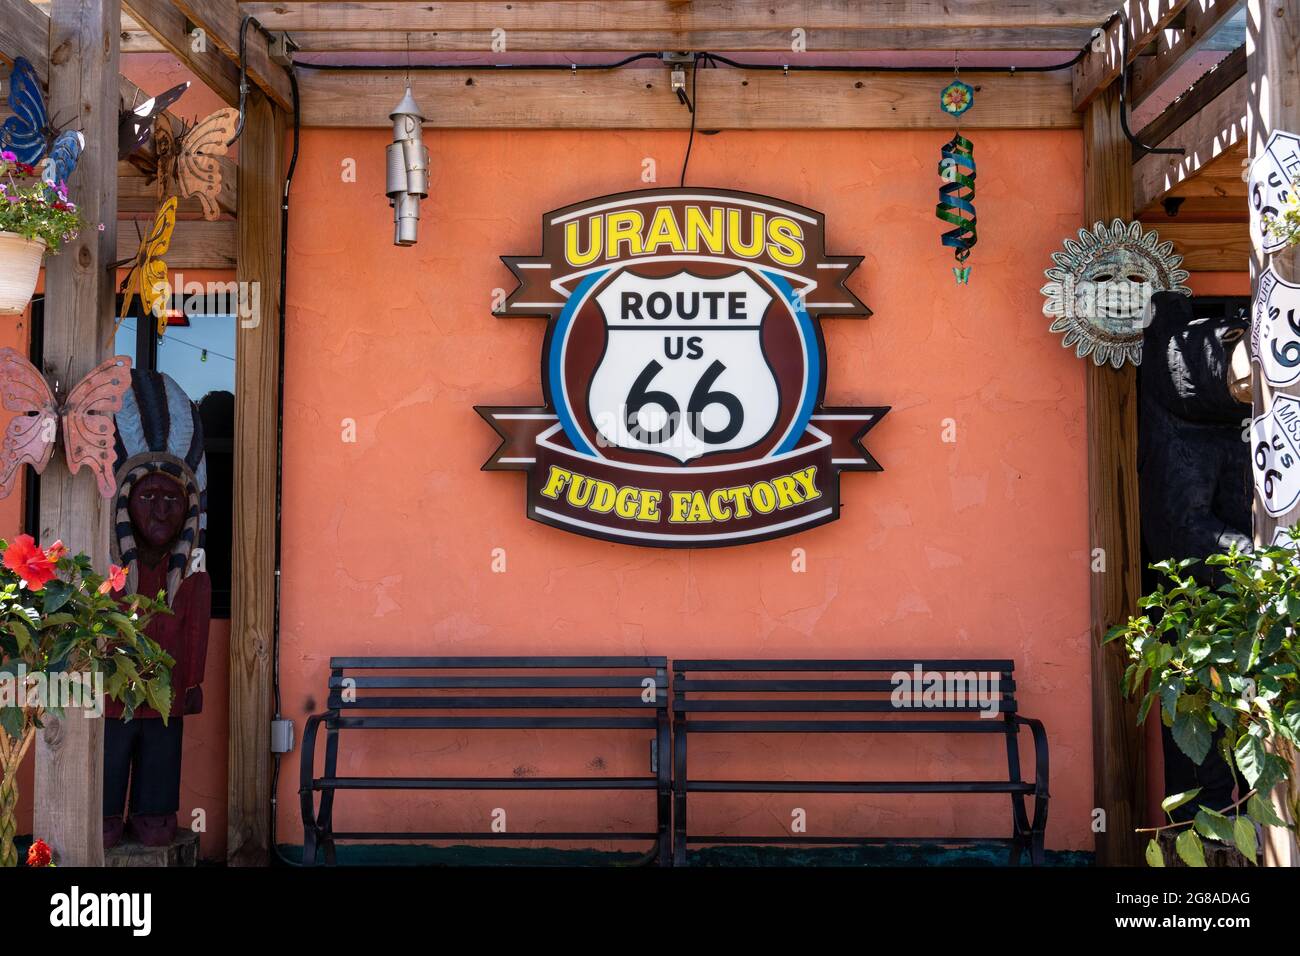 St Robert, Missouri - 13 giugno 2021: La fabbrica di fondenti di Uranus è una famosa fermata turistica lungo la Route 44 e la storica Route 66, conosciuta anche come autostrada statale Z. Foto Stock